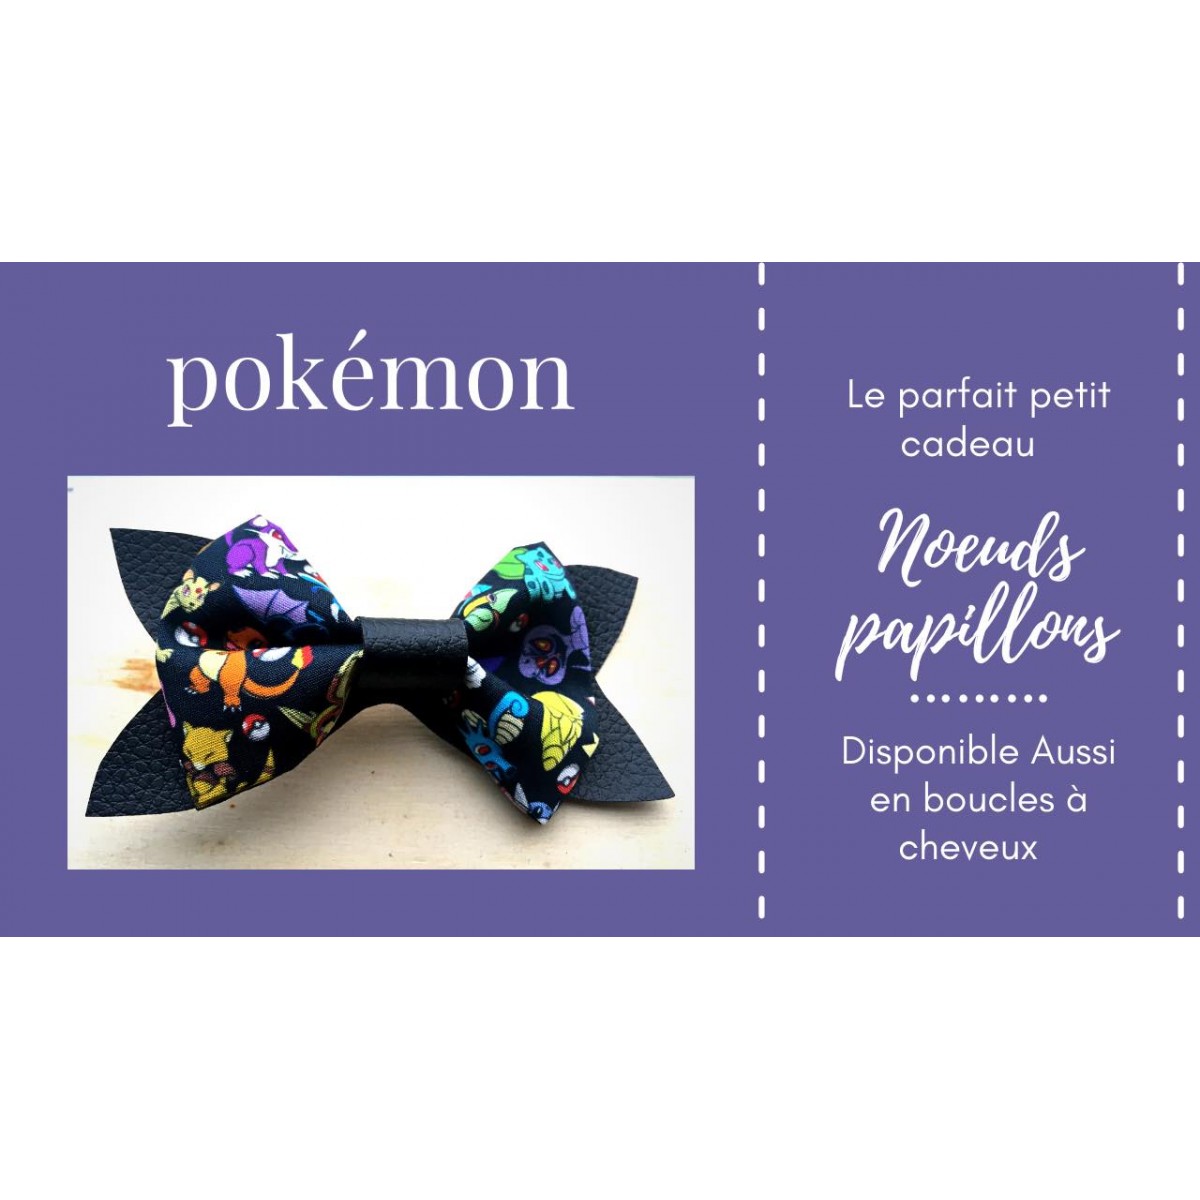 Noeud Papillon / Boucle à cheveux Pokemon enfants 